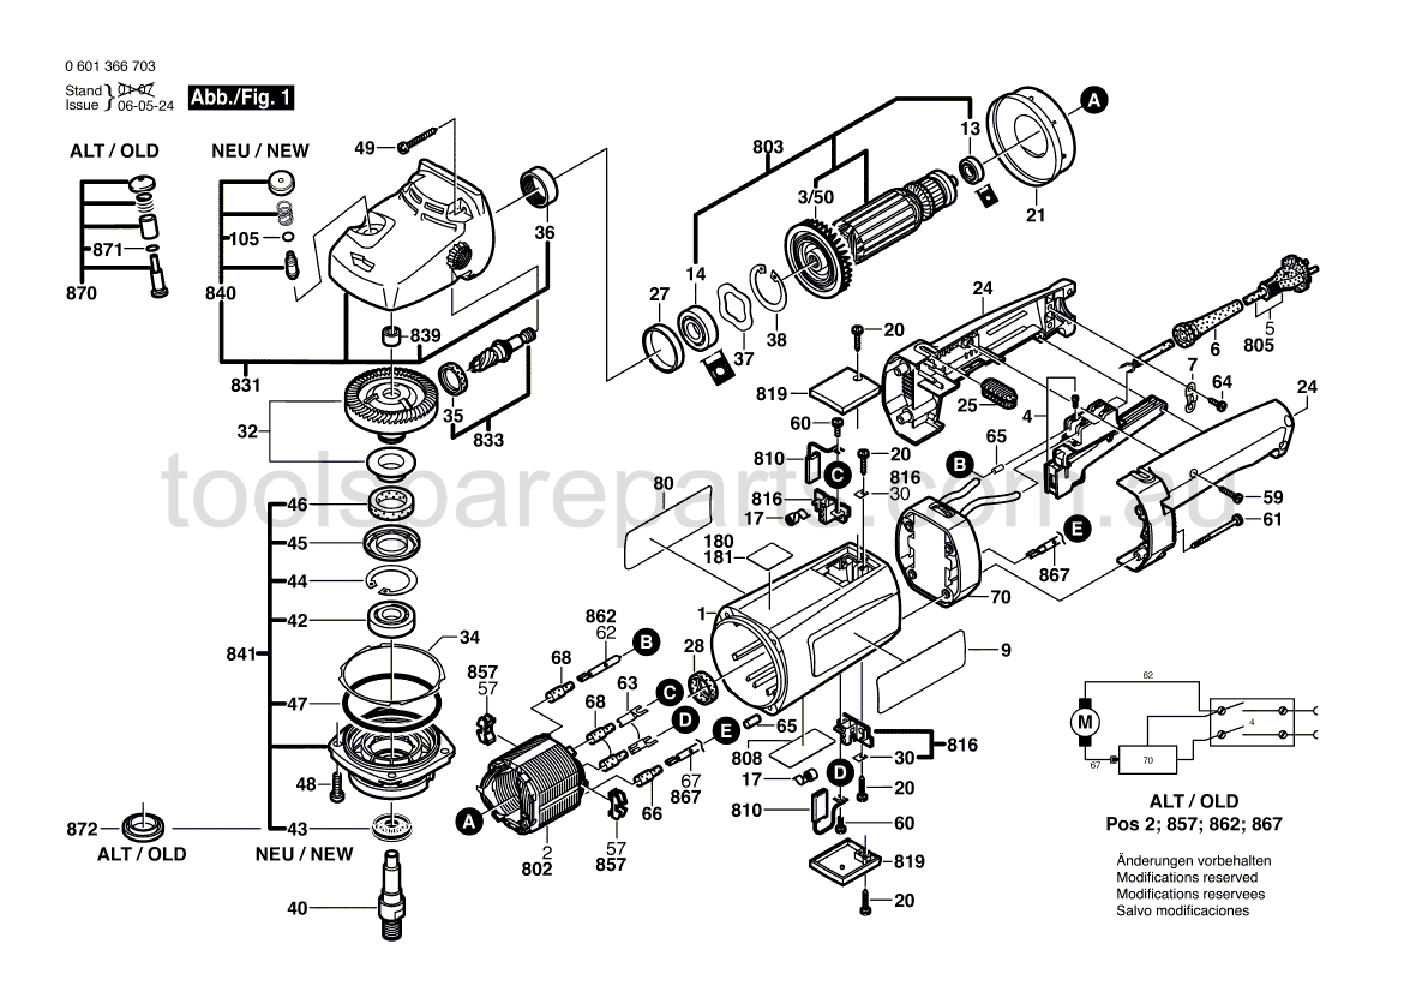 Bosch GPO 12 E 0601366737  Diagram 1